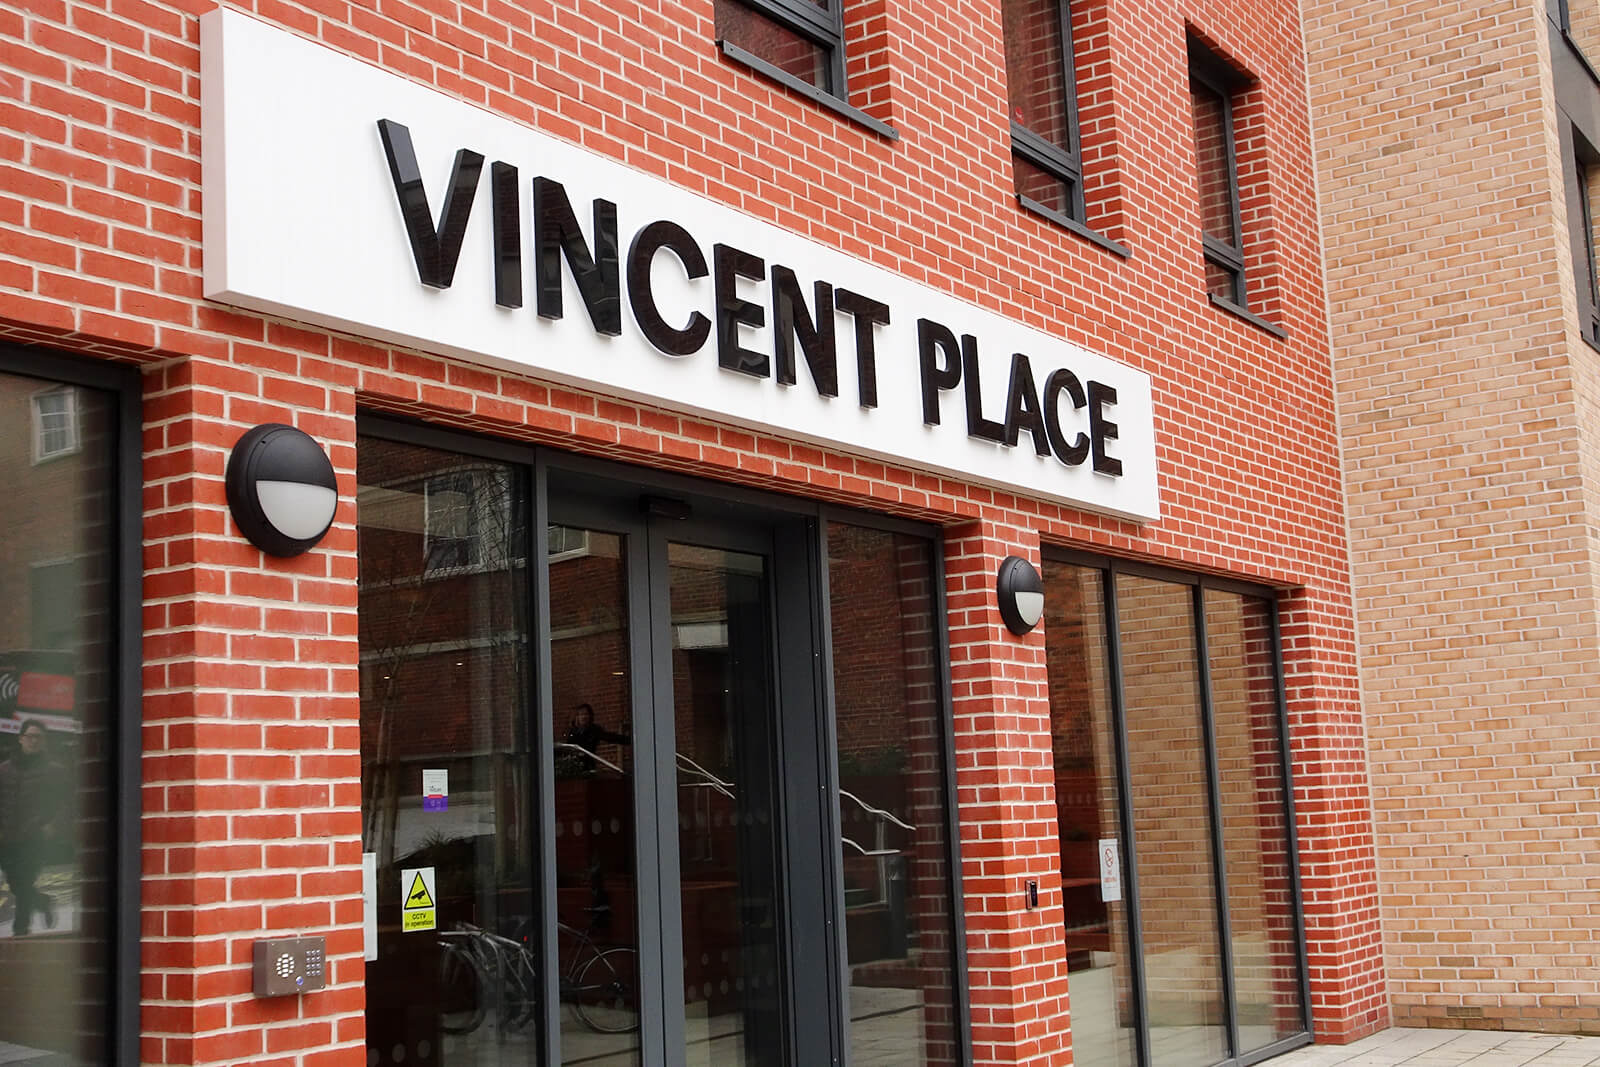 Vincent Place External Building Signage